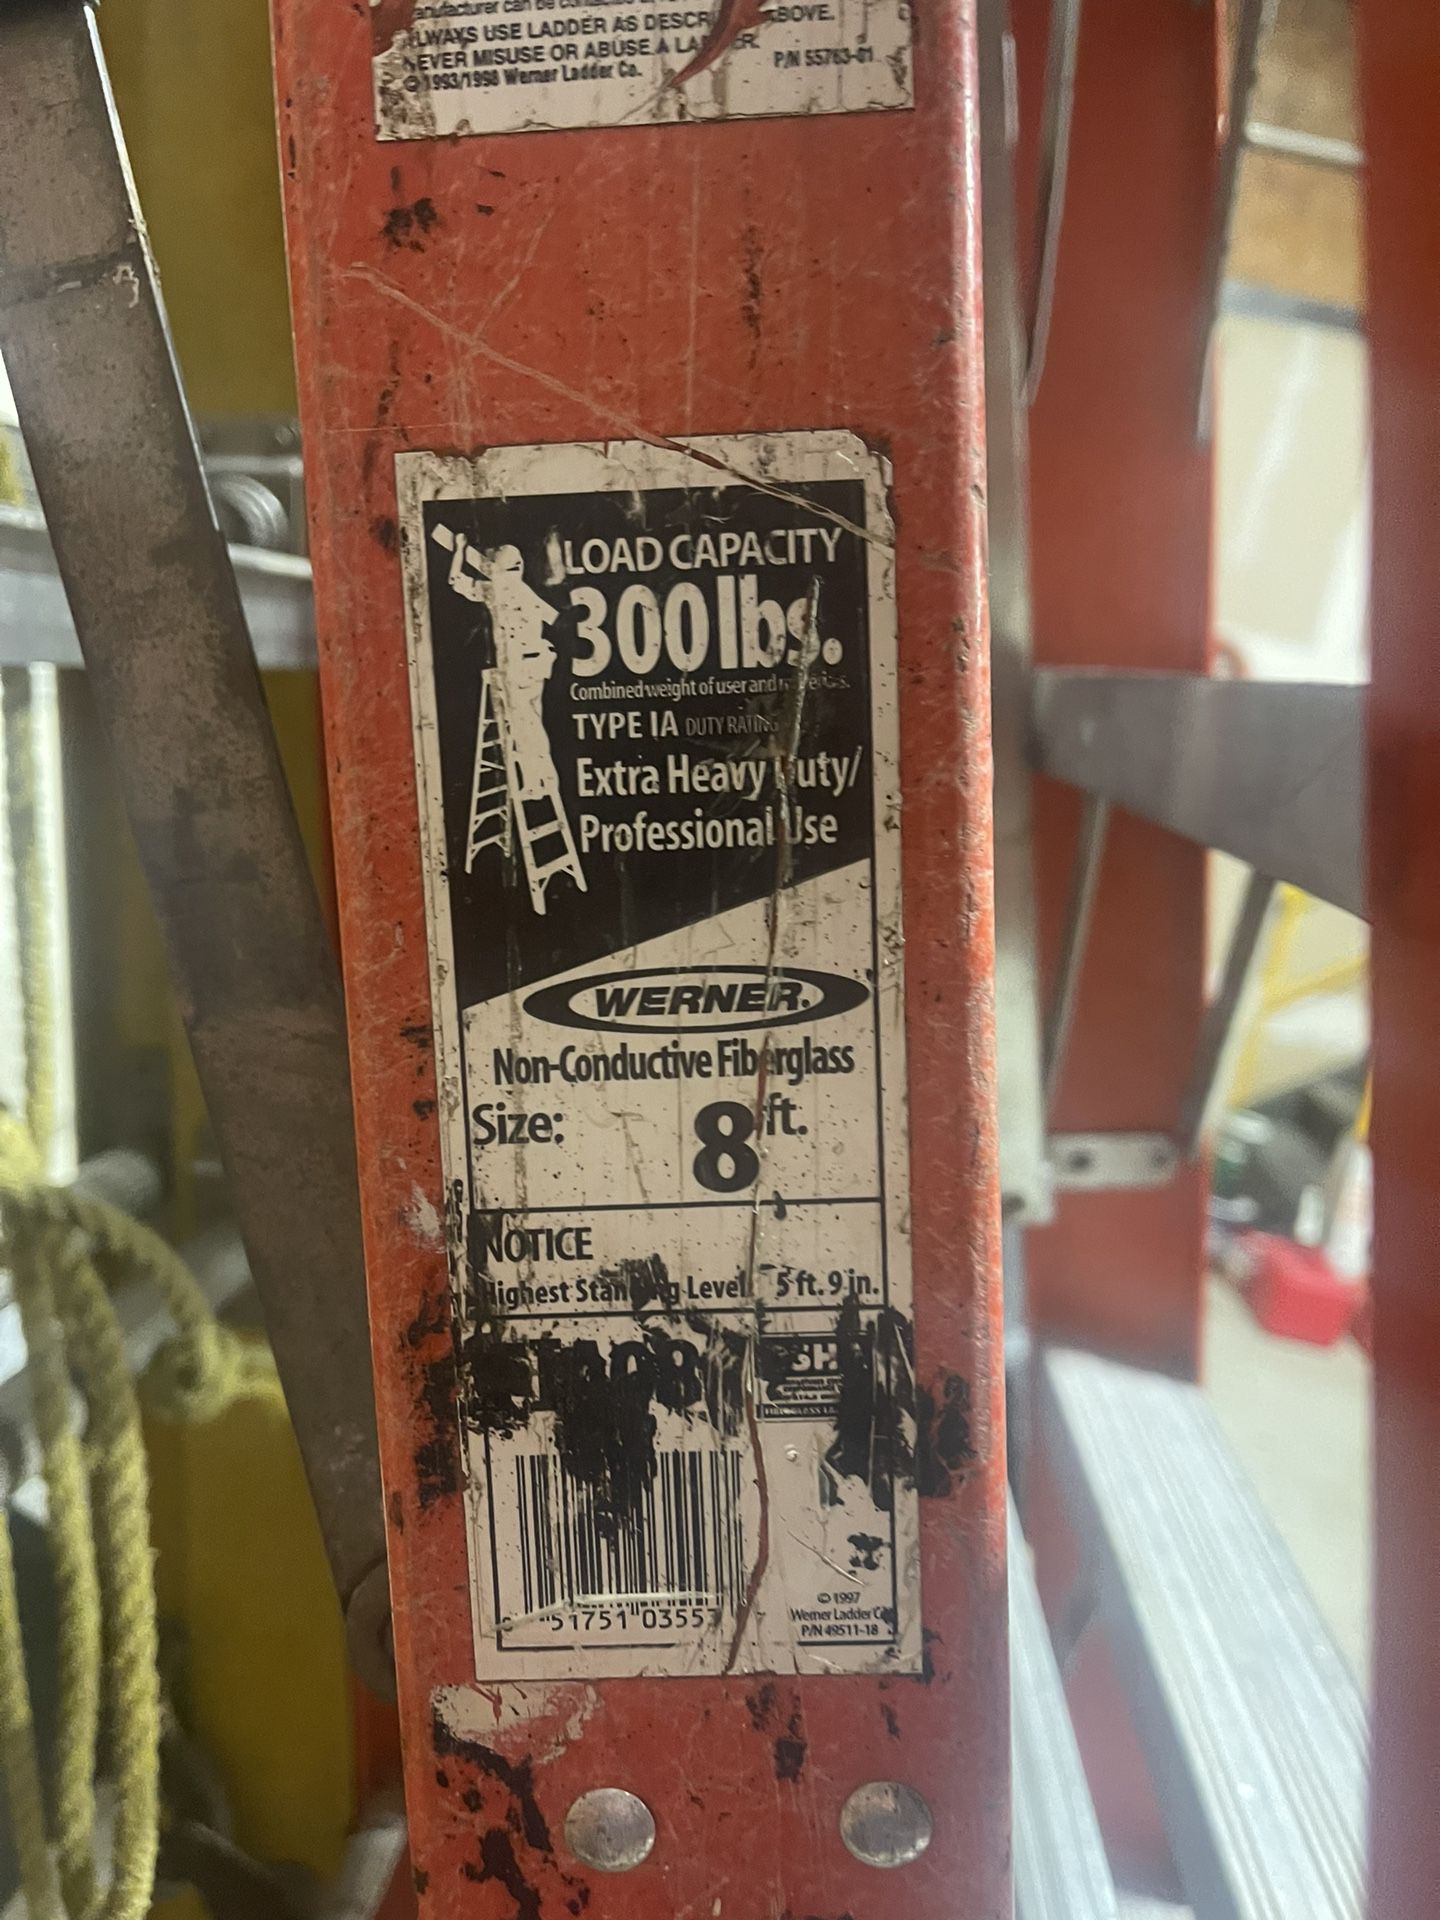 Pottery Barn New York Shoe Ladder for Sale in Jonestown, PA - OfferUp